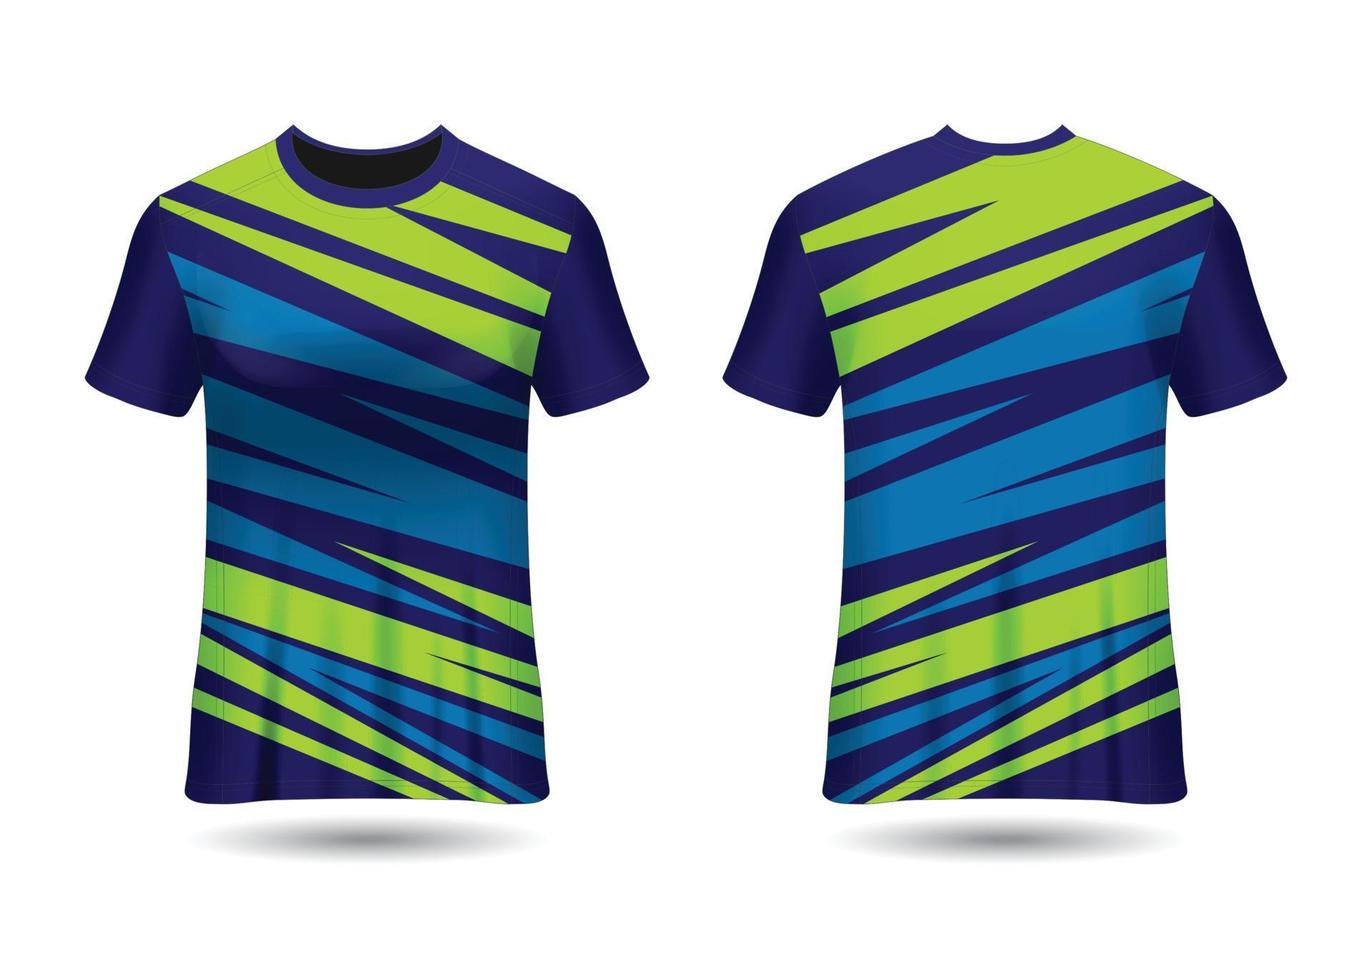 t-shirt sportdesign för racing jersey cykel spel vektor